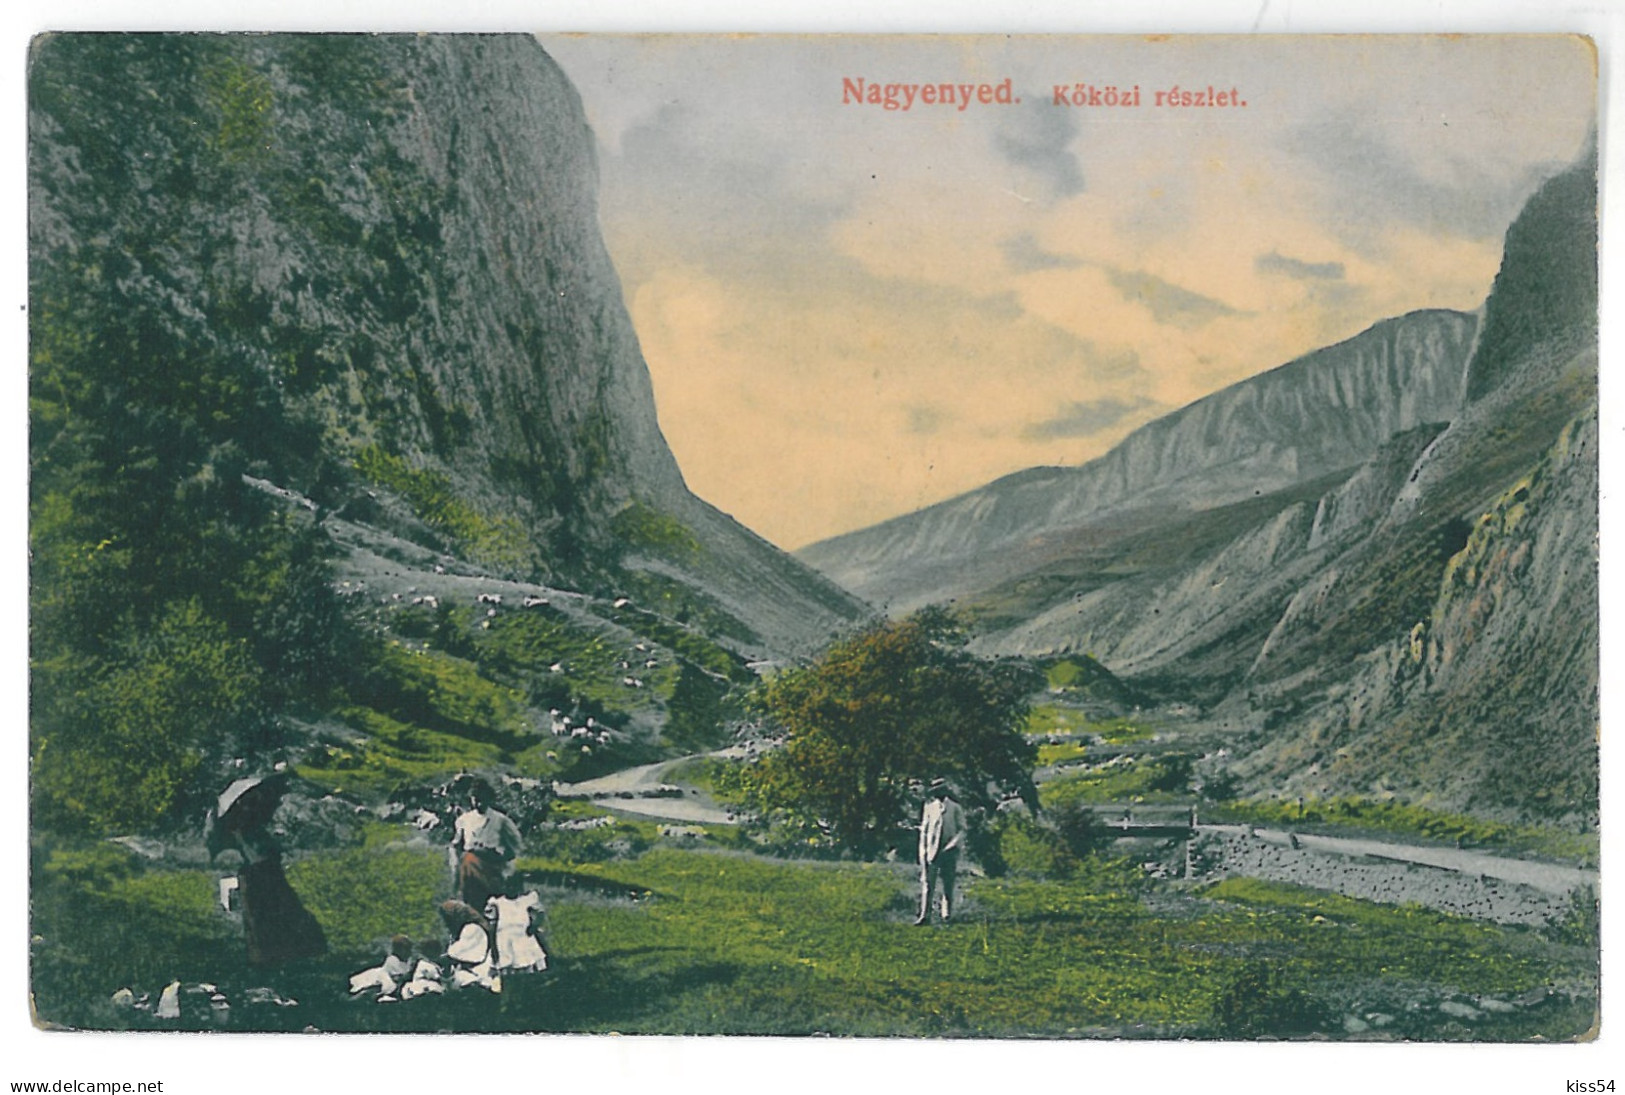 RO 06 - 14945 AIUD, Alba, Romania - Old Postcard - Unused - Romania